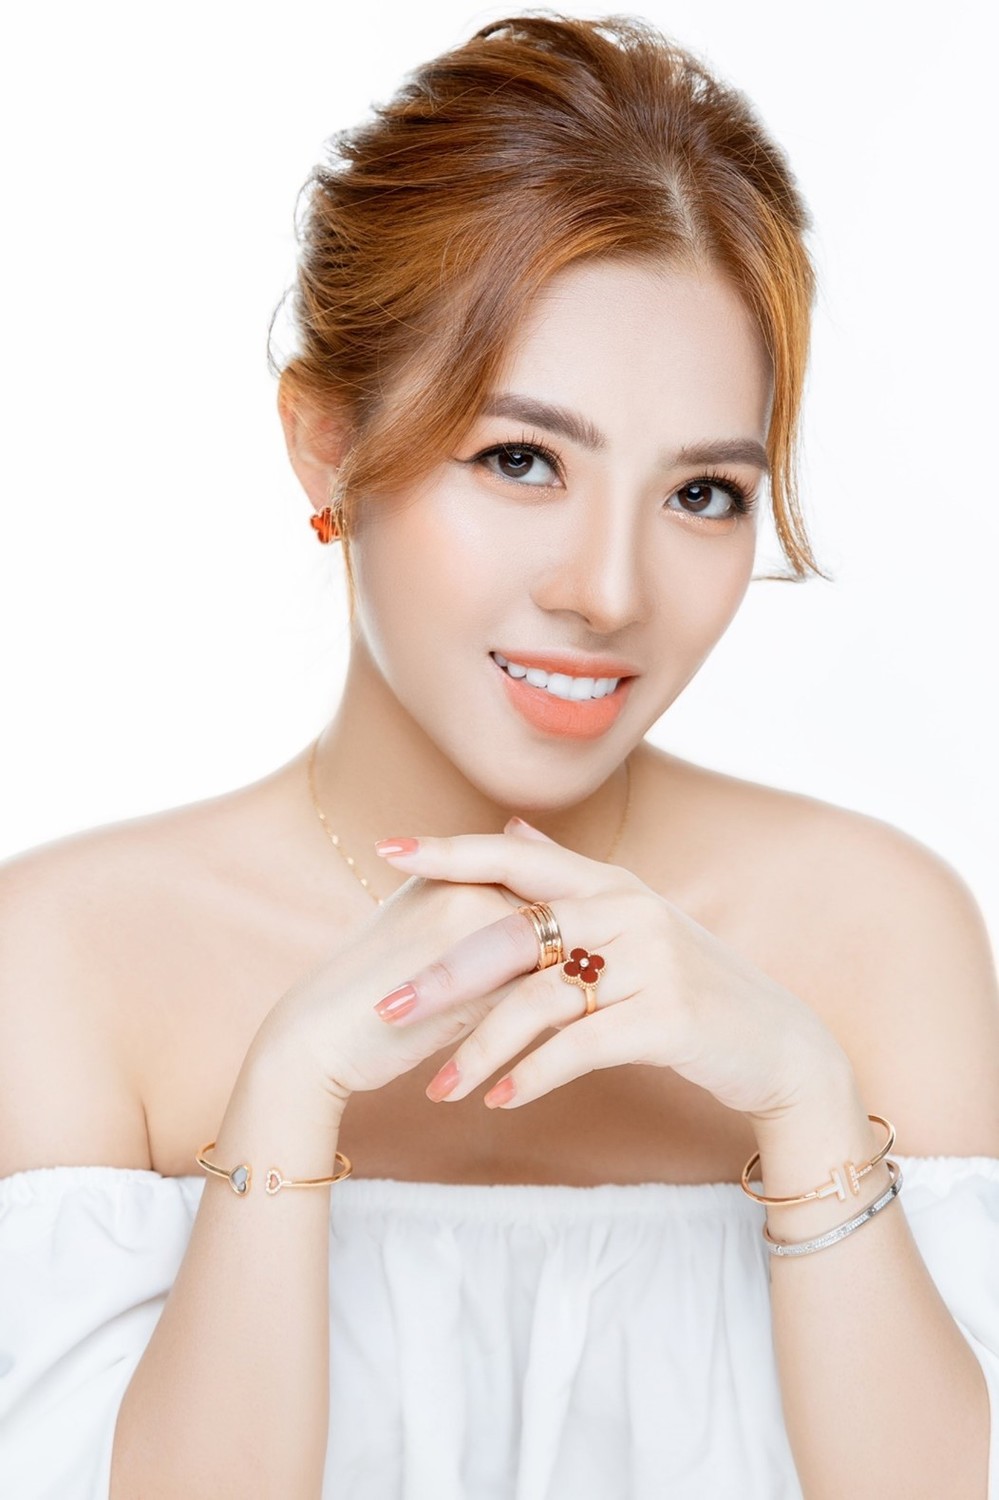 Vũ Thùy Trang, chủ thương hiệu trang sức phong thủy Hera Luxe Jewelry: Thành công nhờ tin vào đam mê - Ảnh 3.